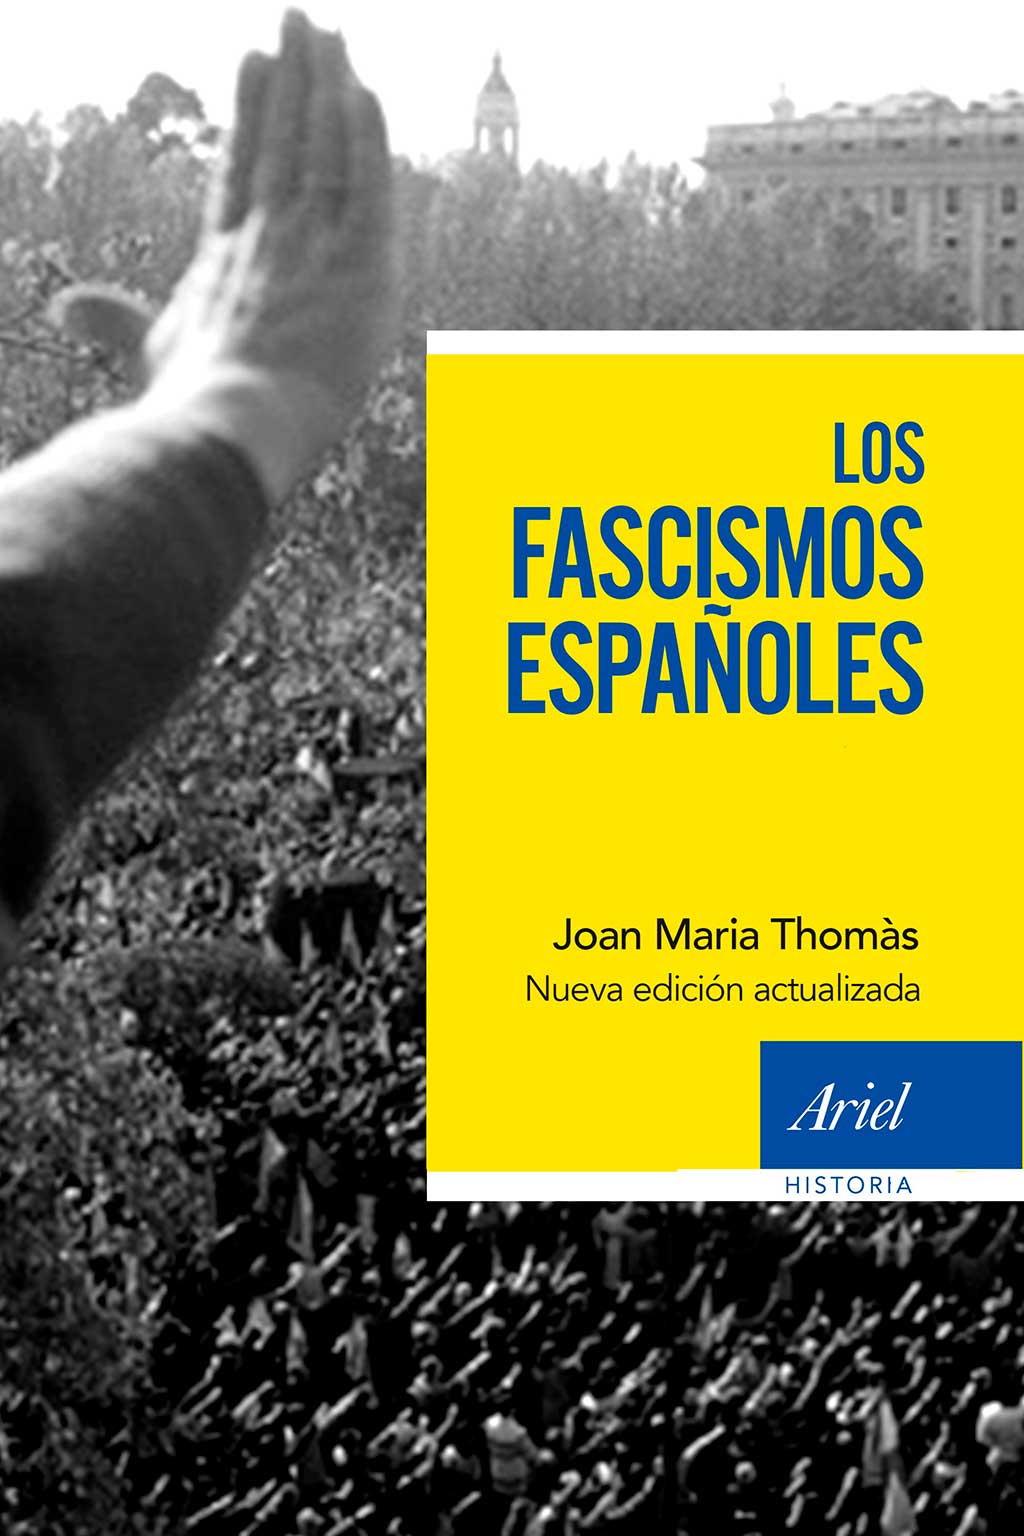 los-fascismos-espanoles-joan-maria-thomas